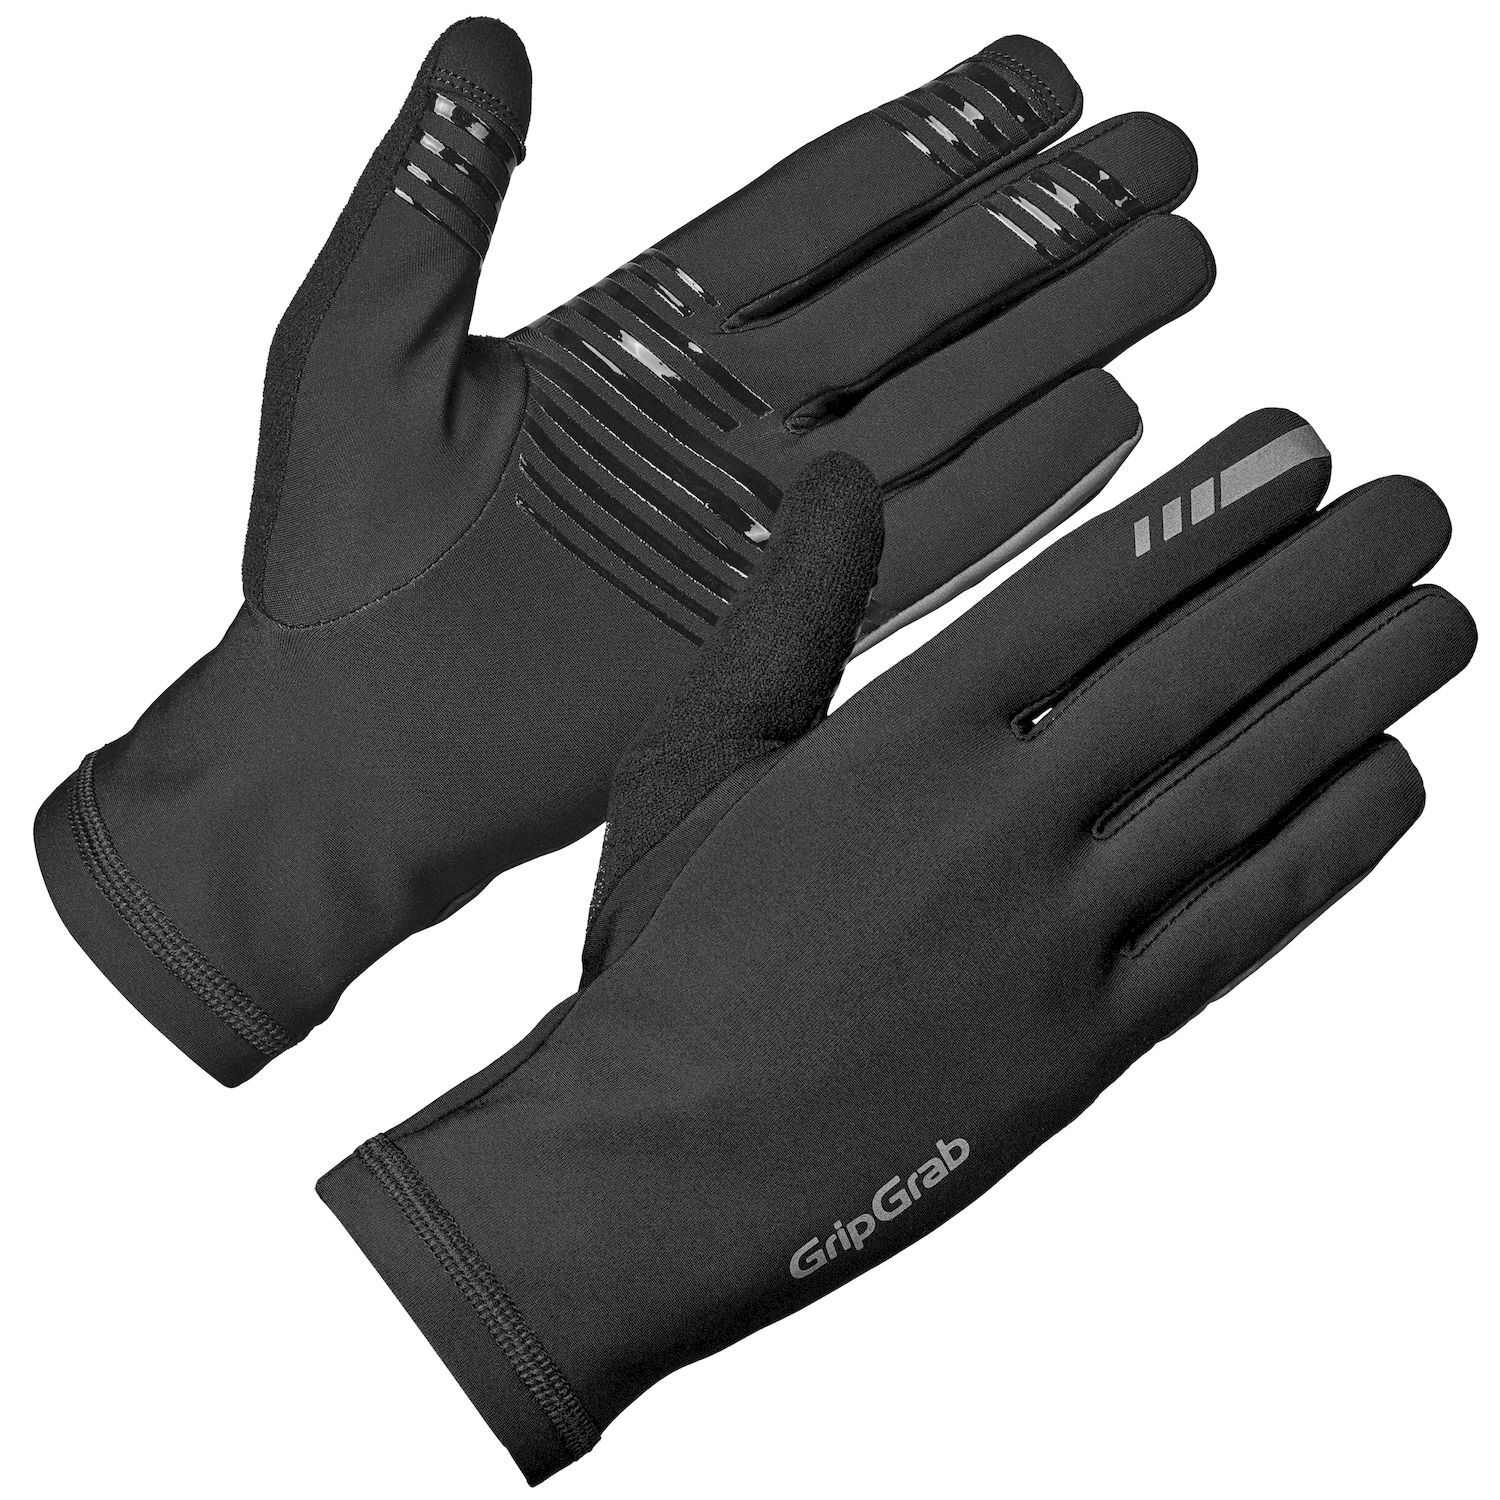 GripGrab Insulator 2 Midseason Gloves - Cykelhandskar